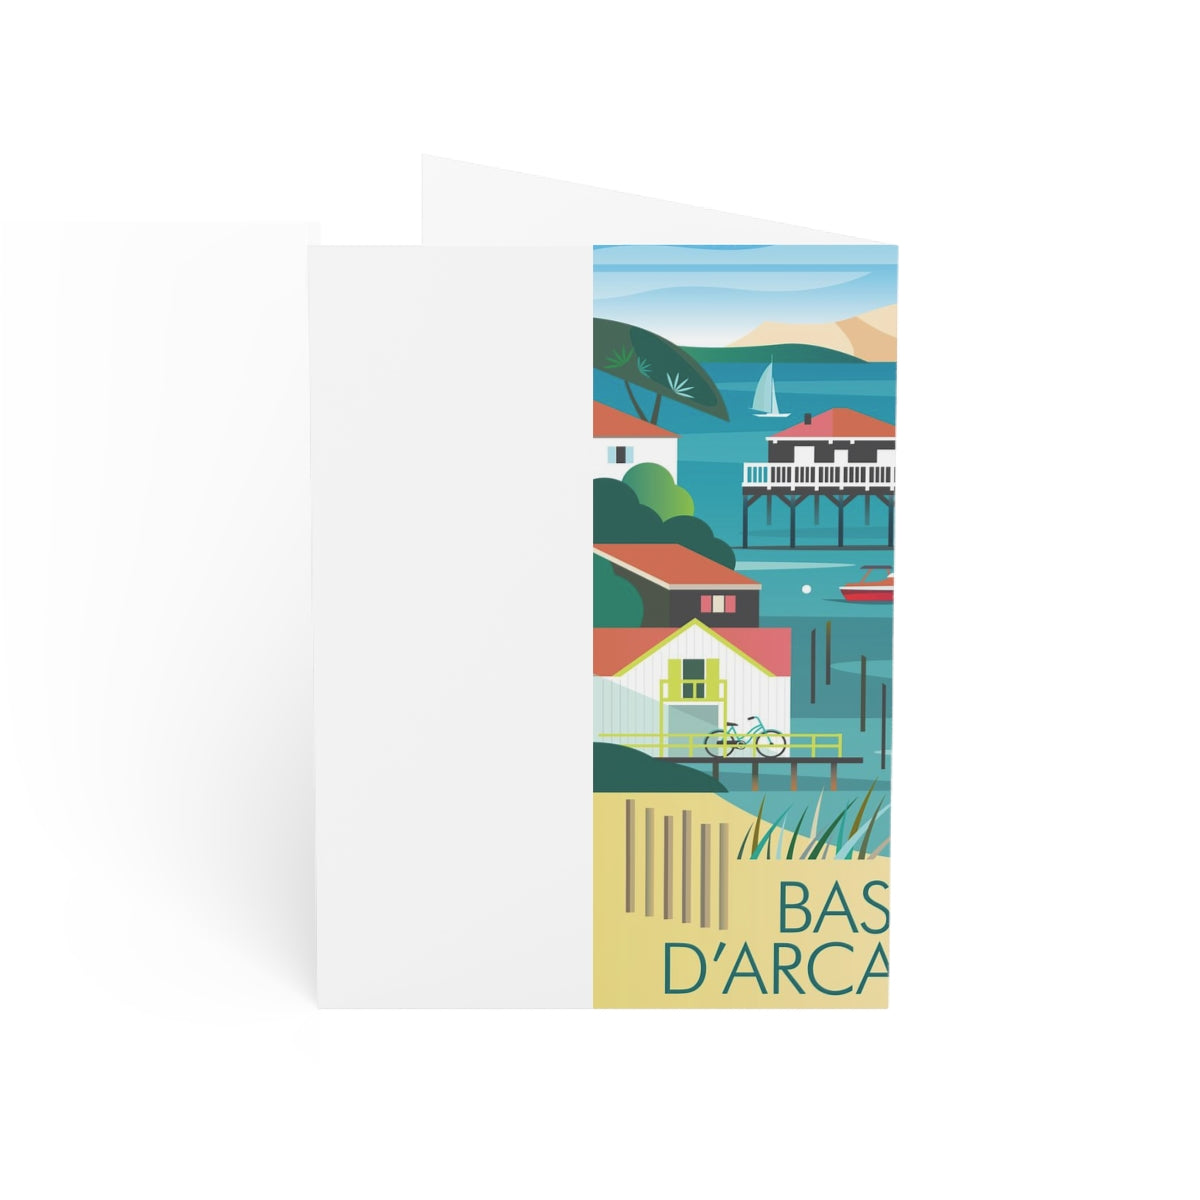 Bassin d'Arcachon gefaltete matte Notizkarten + Umschläge (10 Stück) 